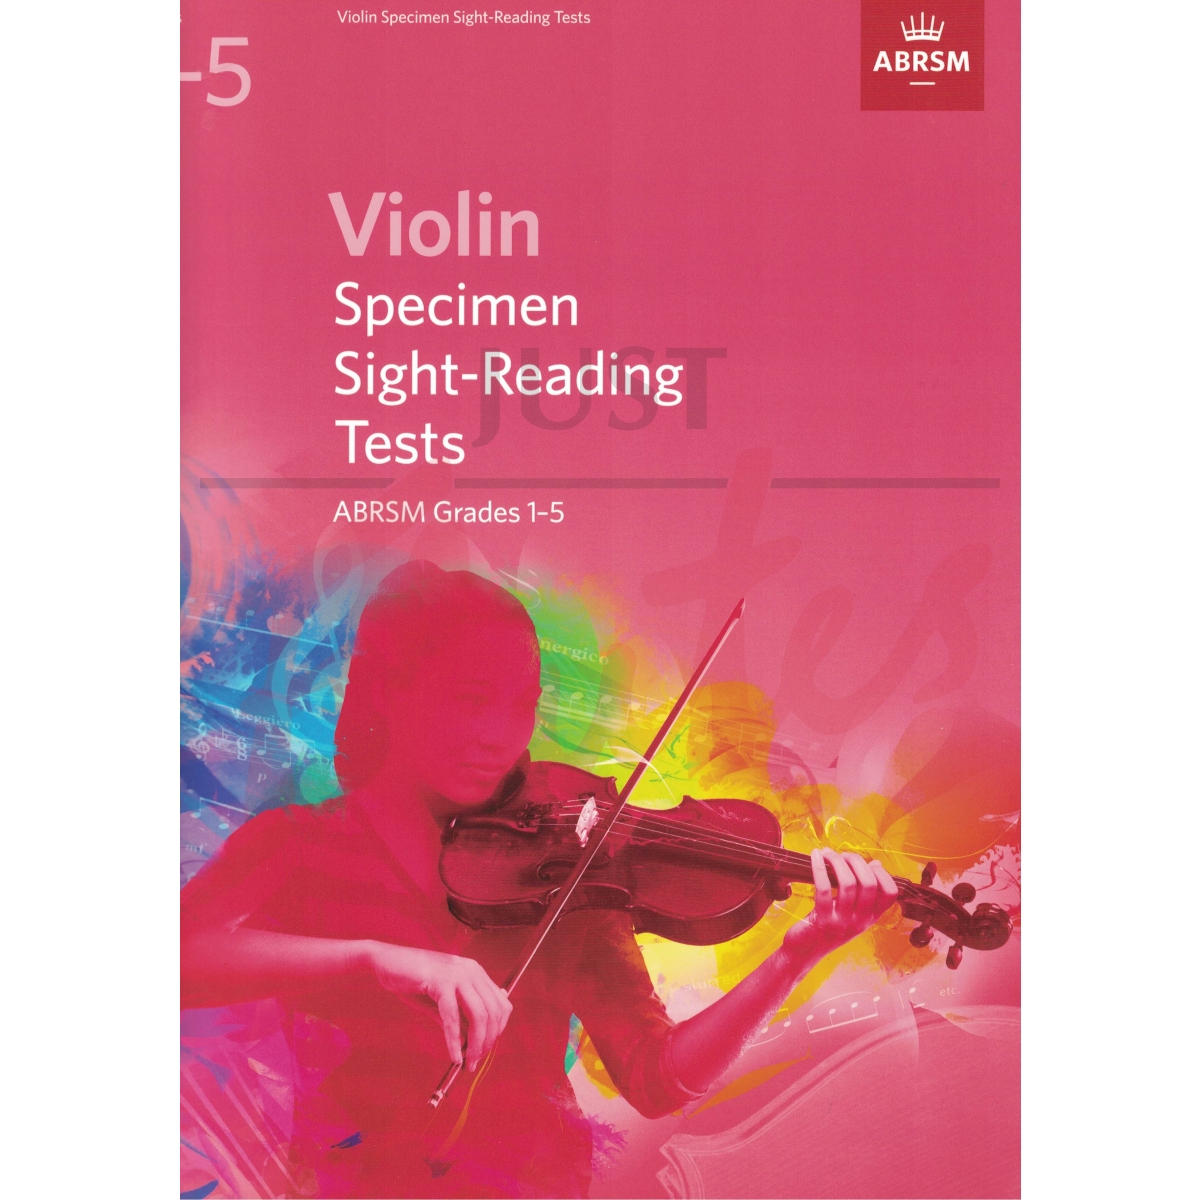 Specimen Sight-Reading Tests Grades 1-5 [Violin]